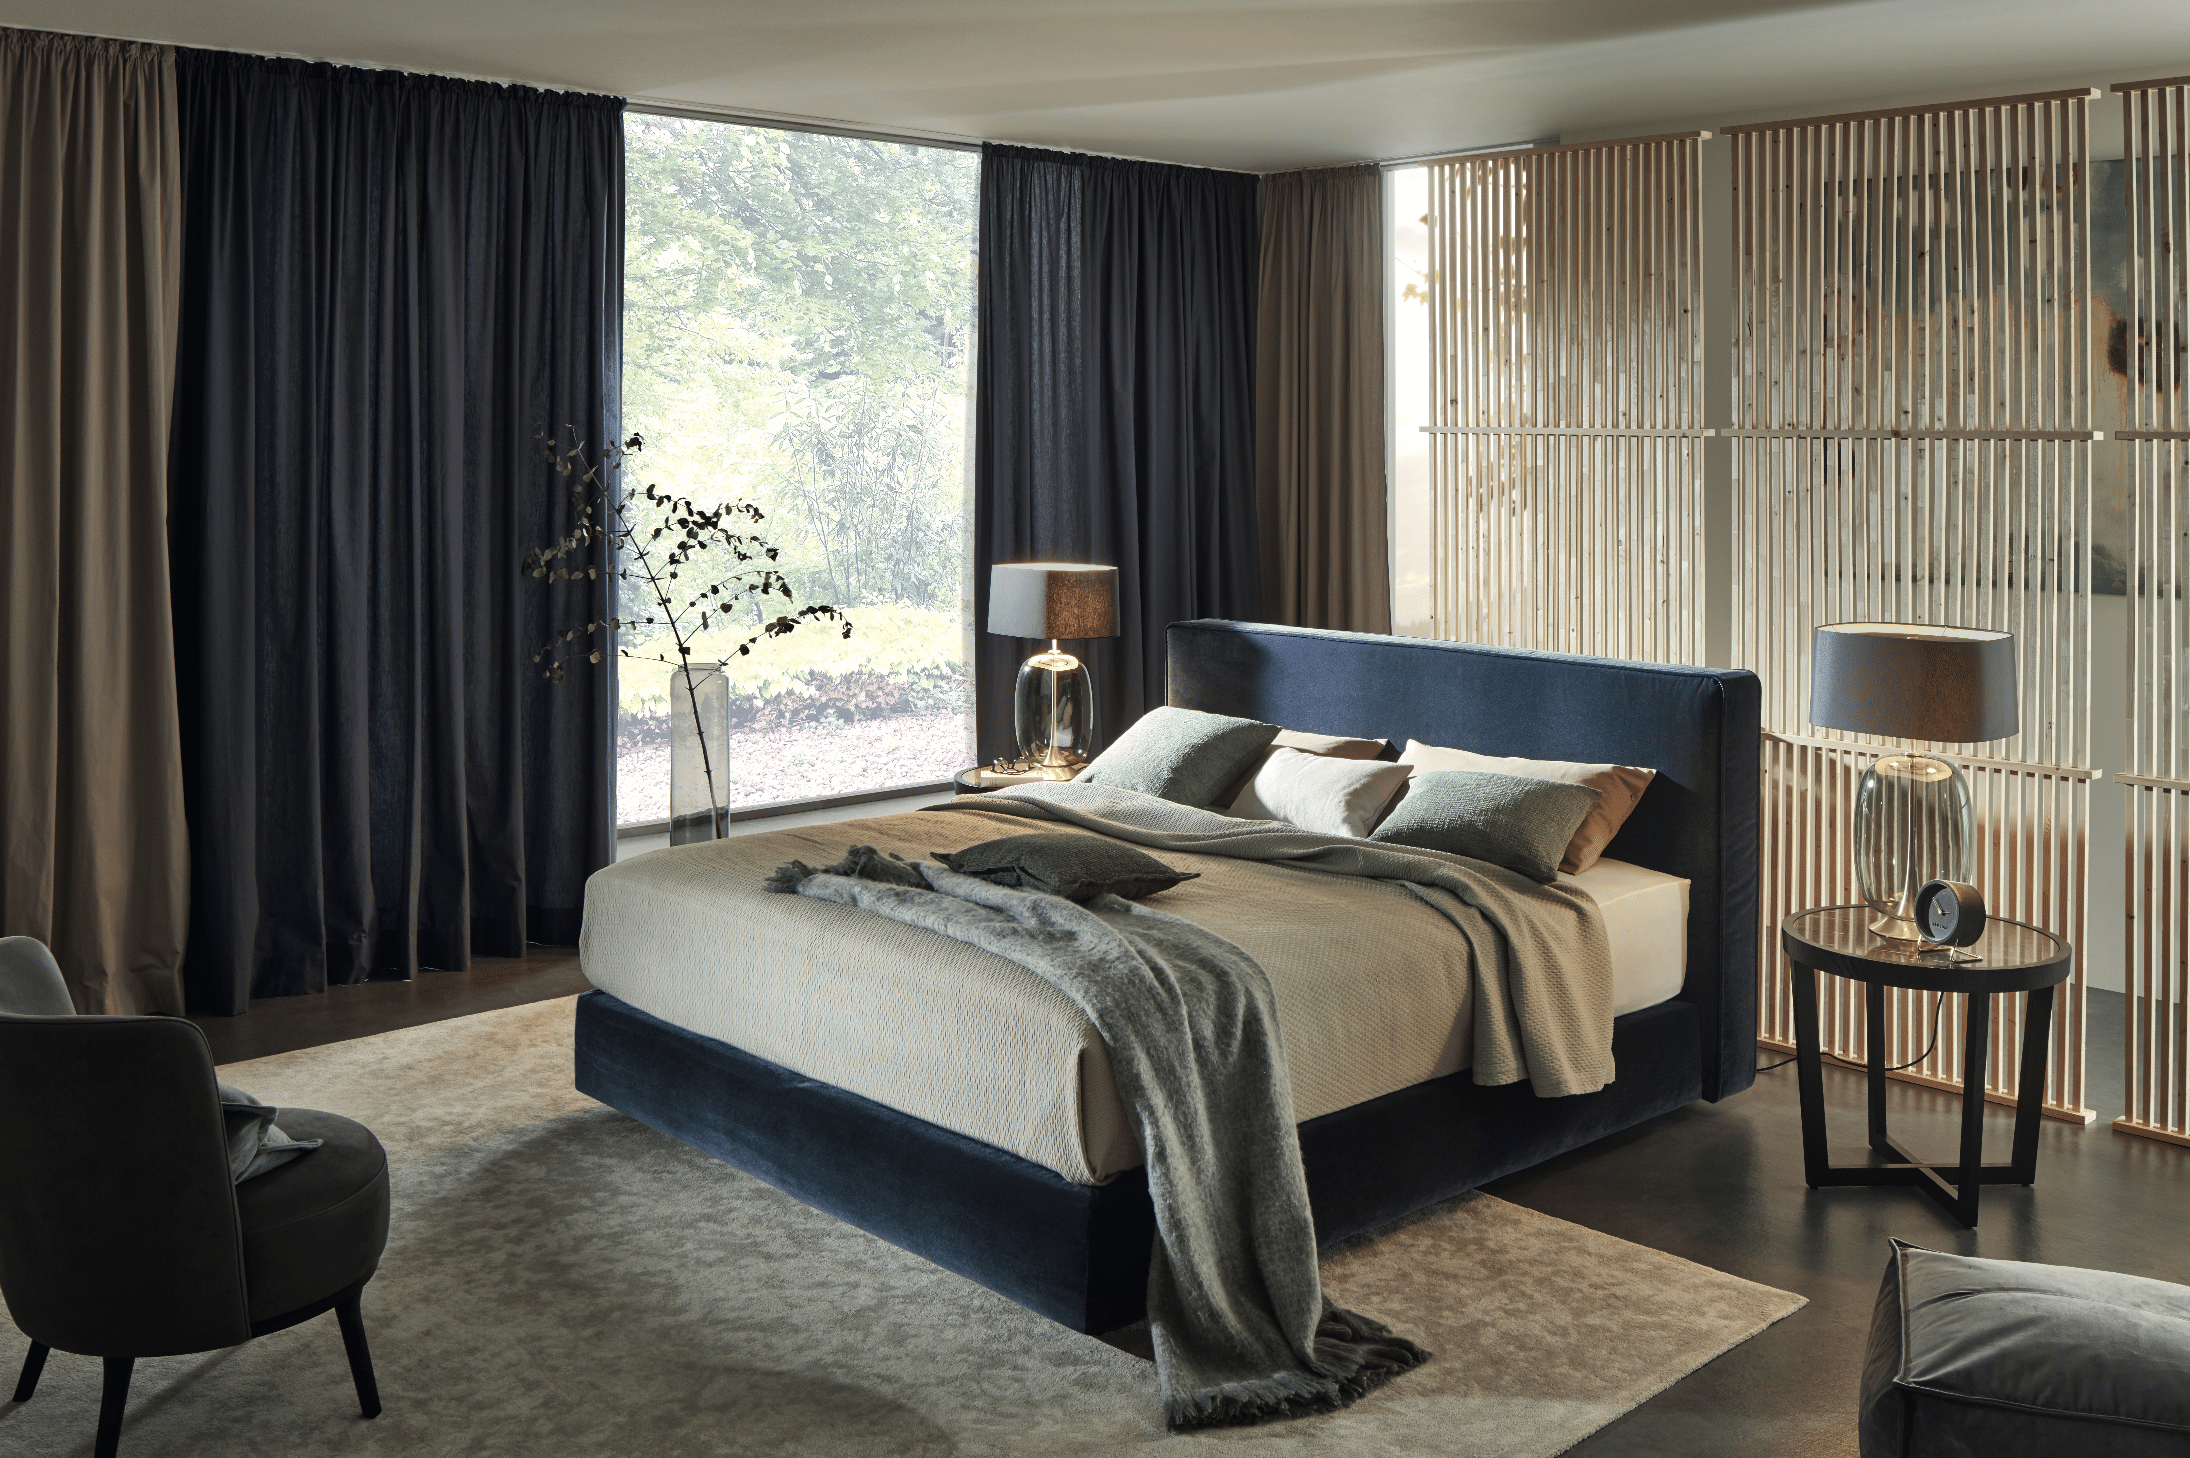 Grill & Ronacher zeigt ein Schlafzimmer mit sehr hohem Doppelbett in blau, blickdichten hohen Vorhängen und runden Nachttischen von Bielefelder Werkstätten.